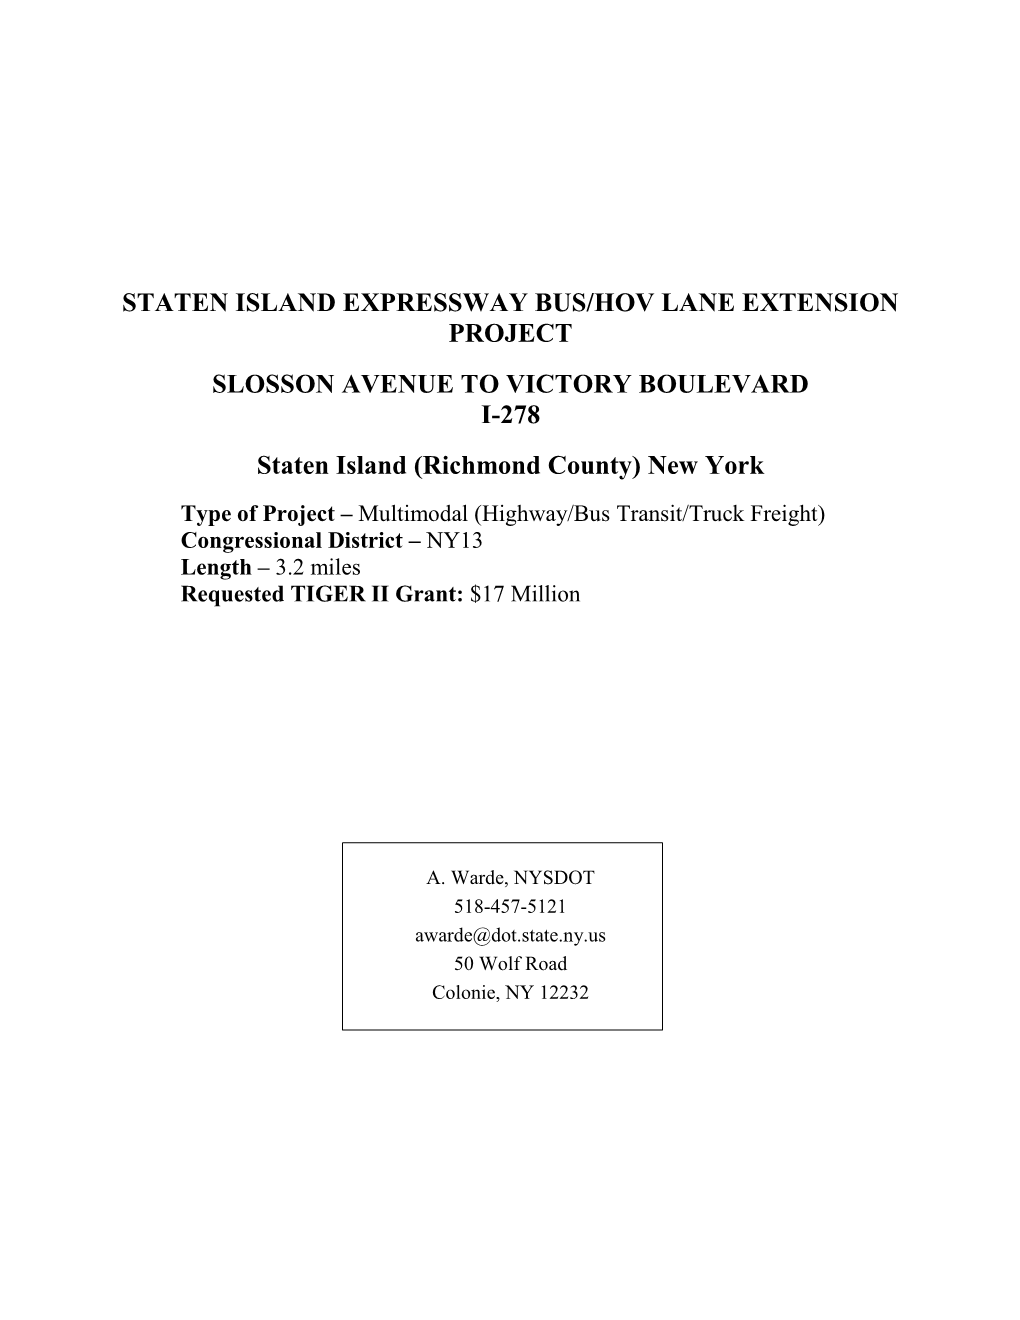 Staten Island Expressway Bus/Hov Lane Extension